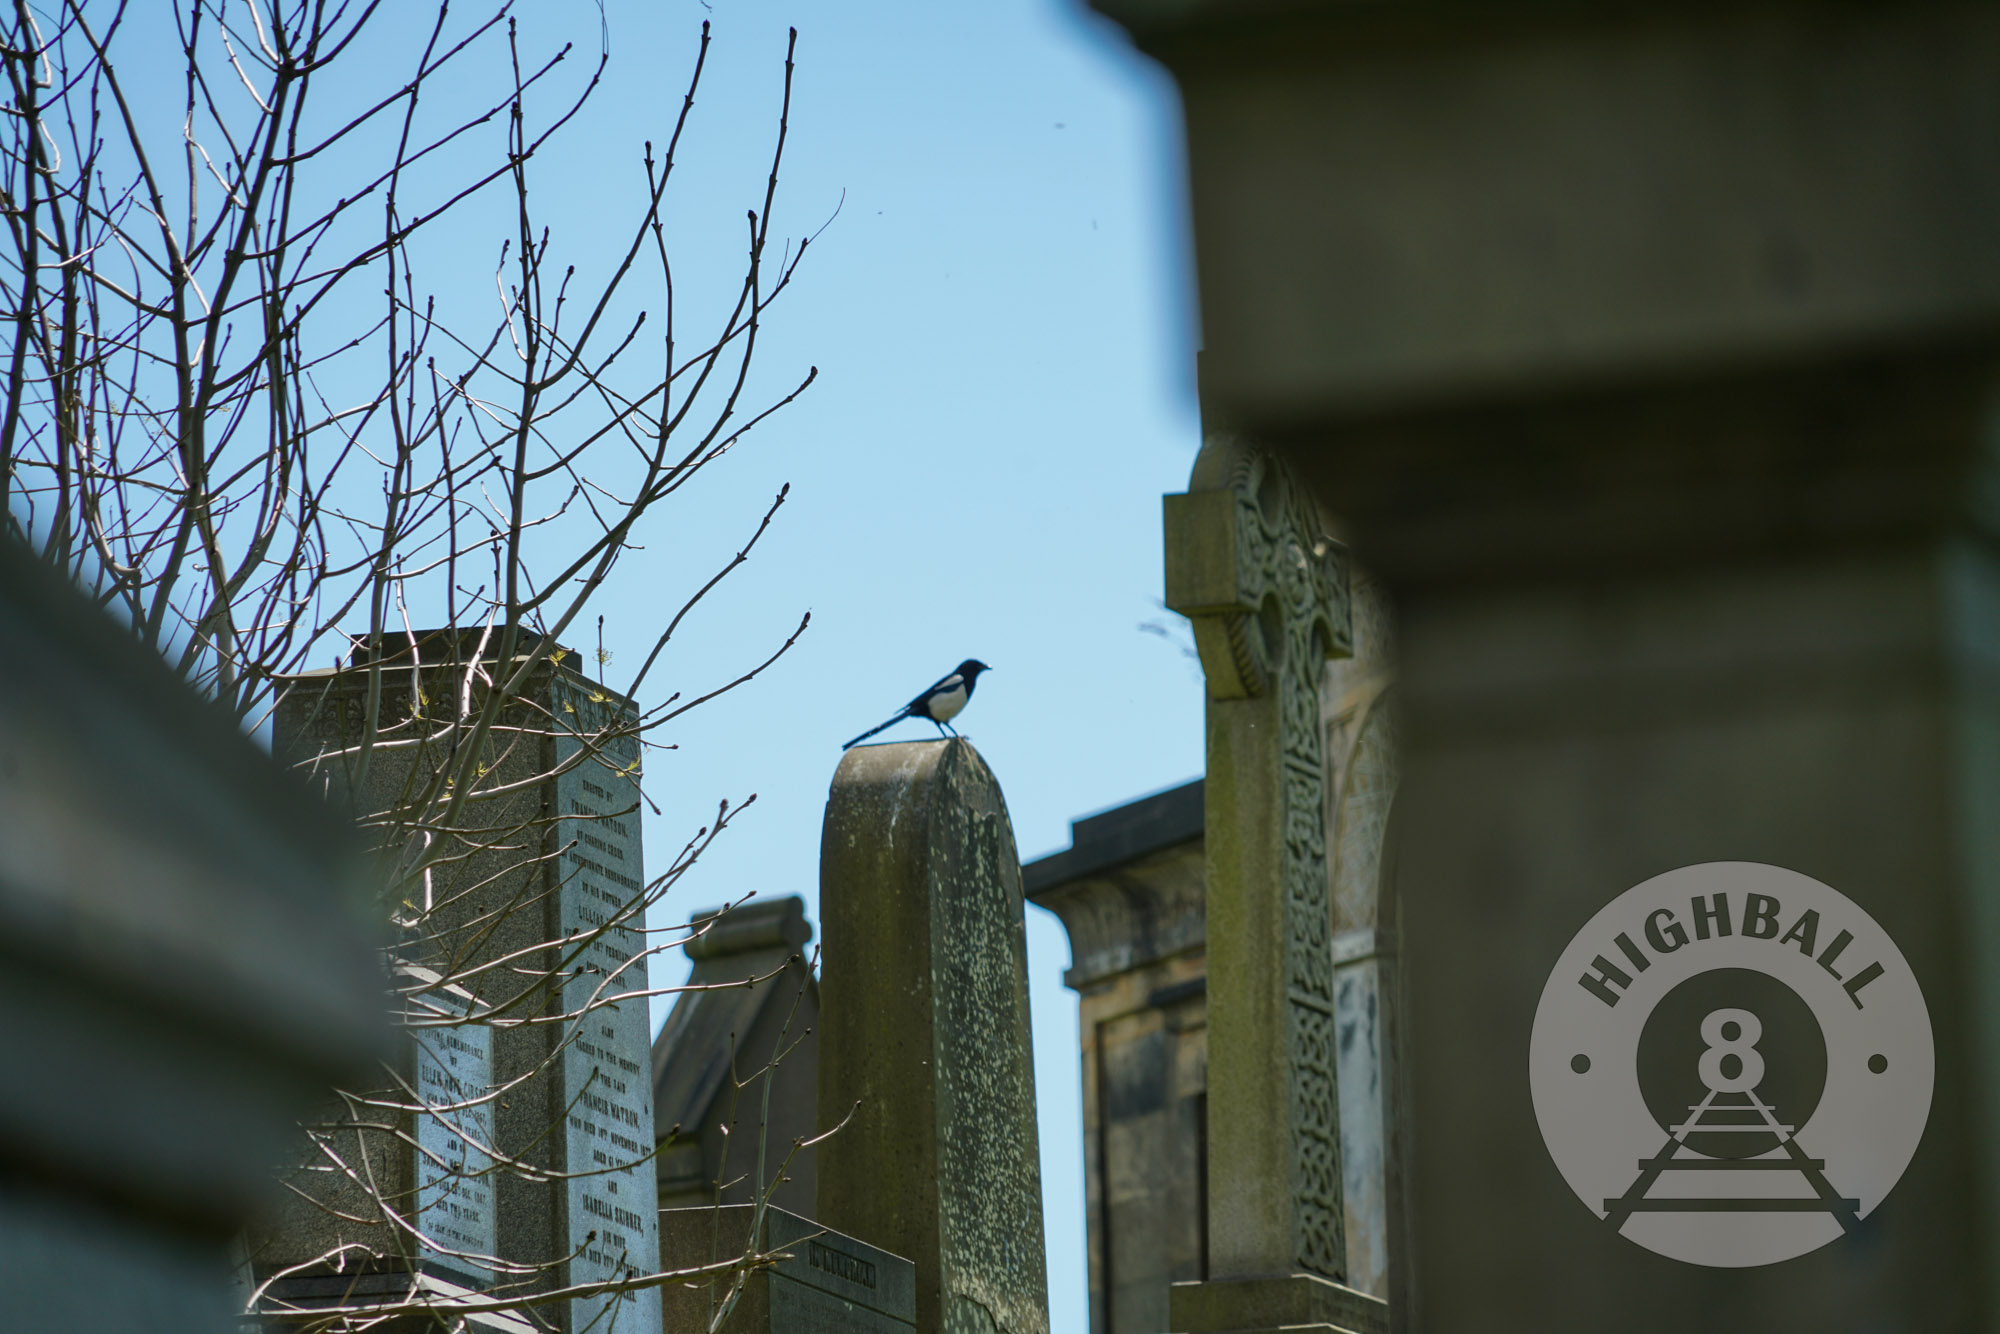 Magpie among the gravestones at the Glasgow Necropolis, Glasgow, Scotland, UK, 2018.